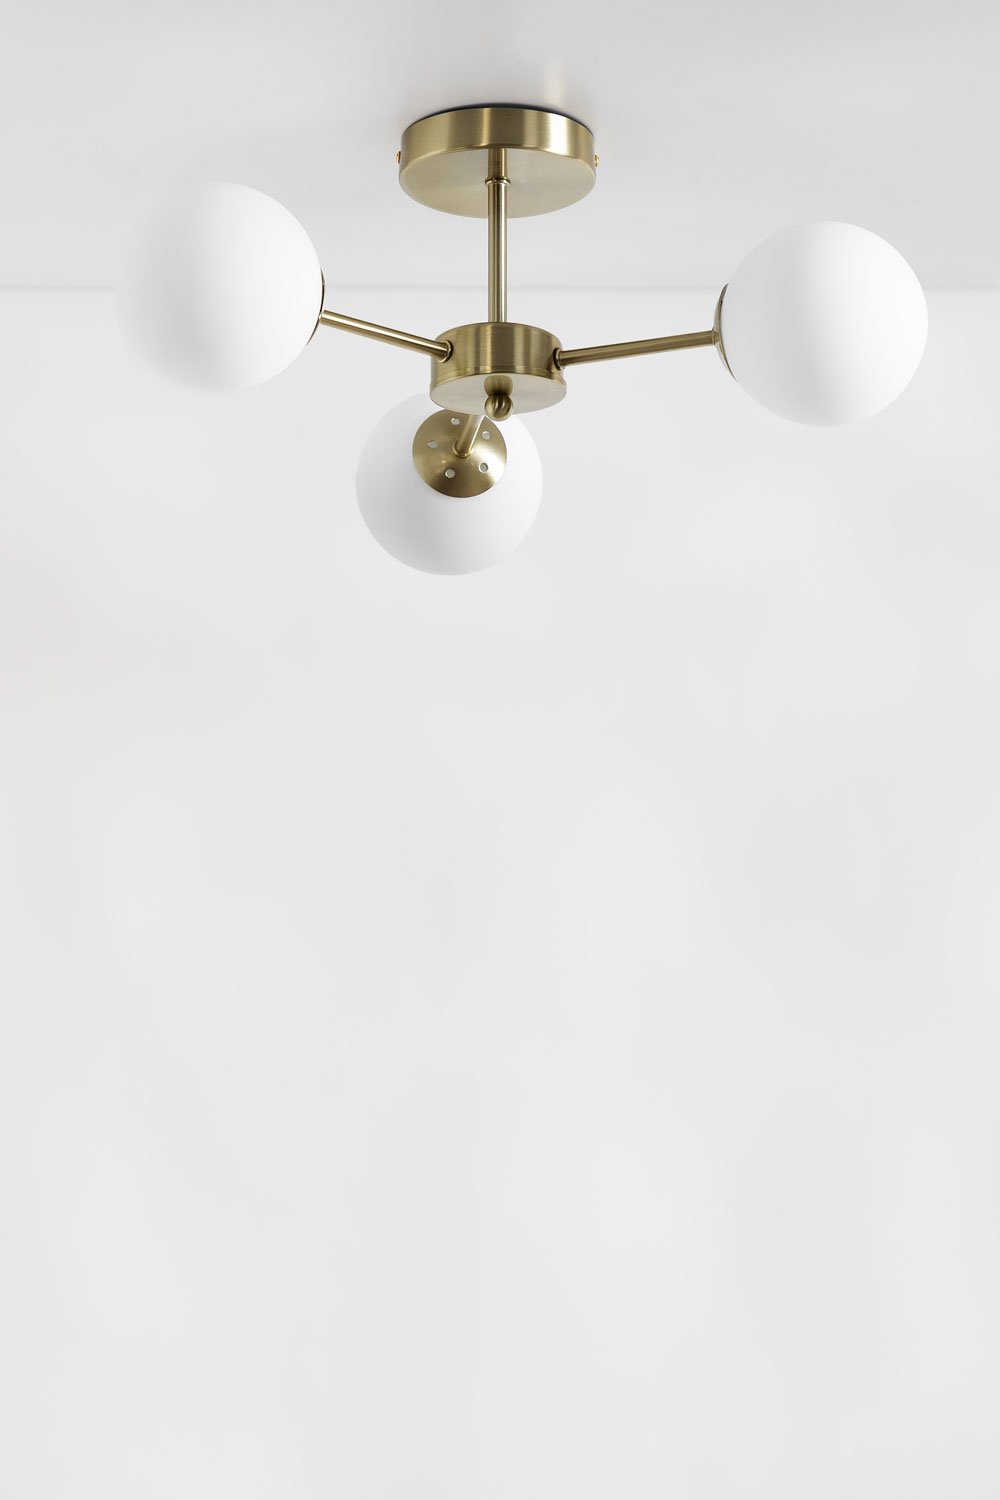 Plafondlamp met 3 kristallen bollen Uvol, galerij beeld 1